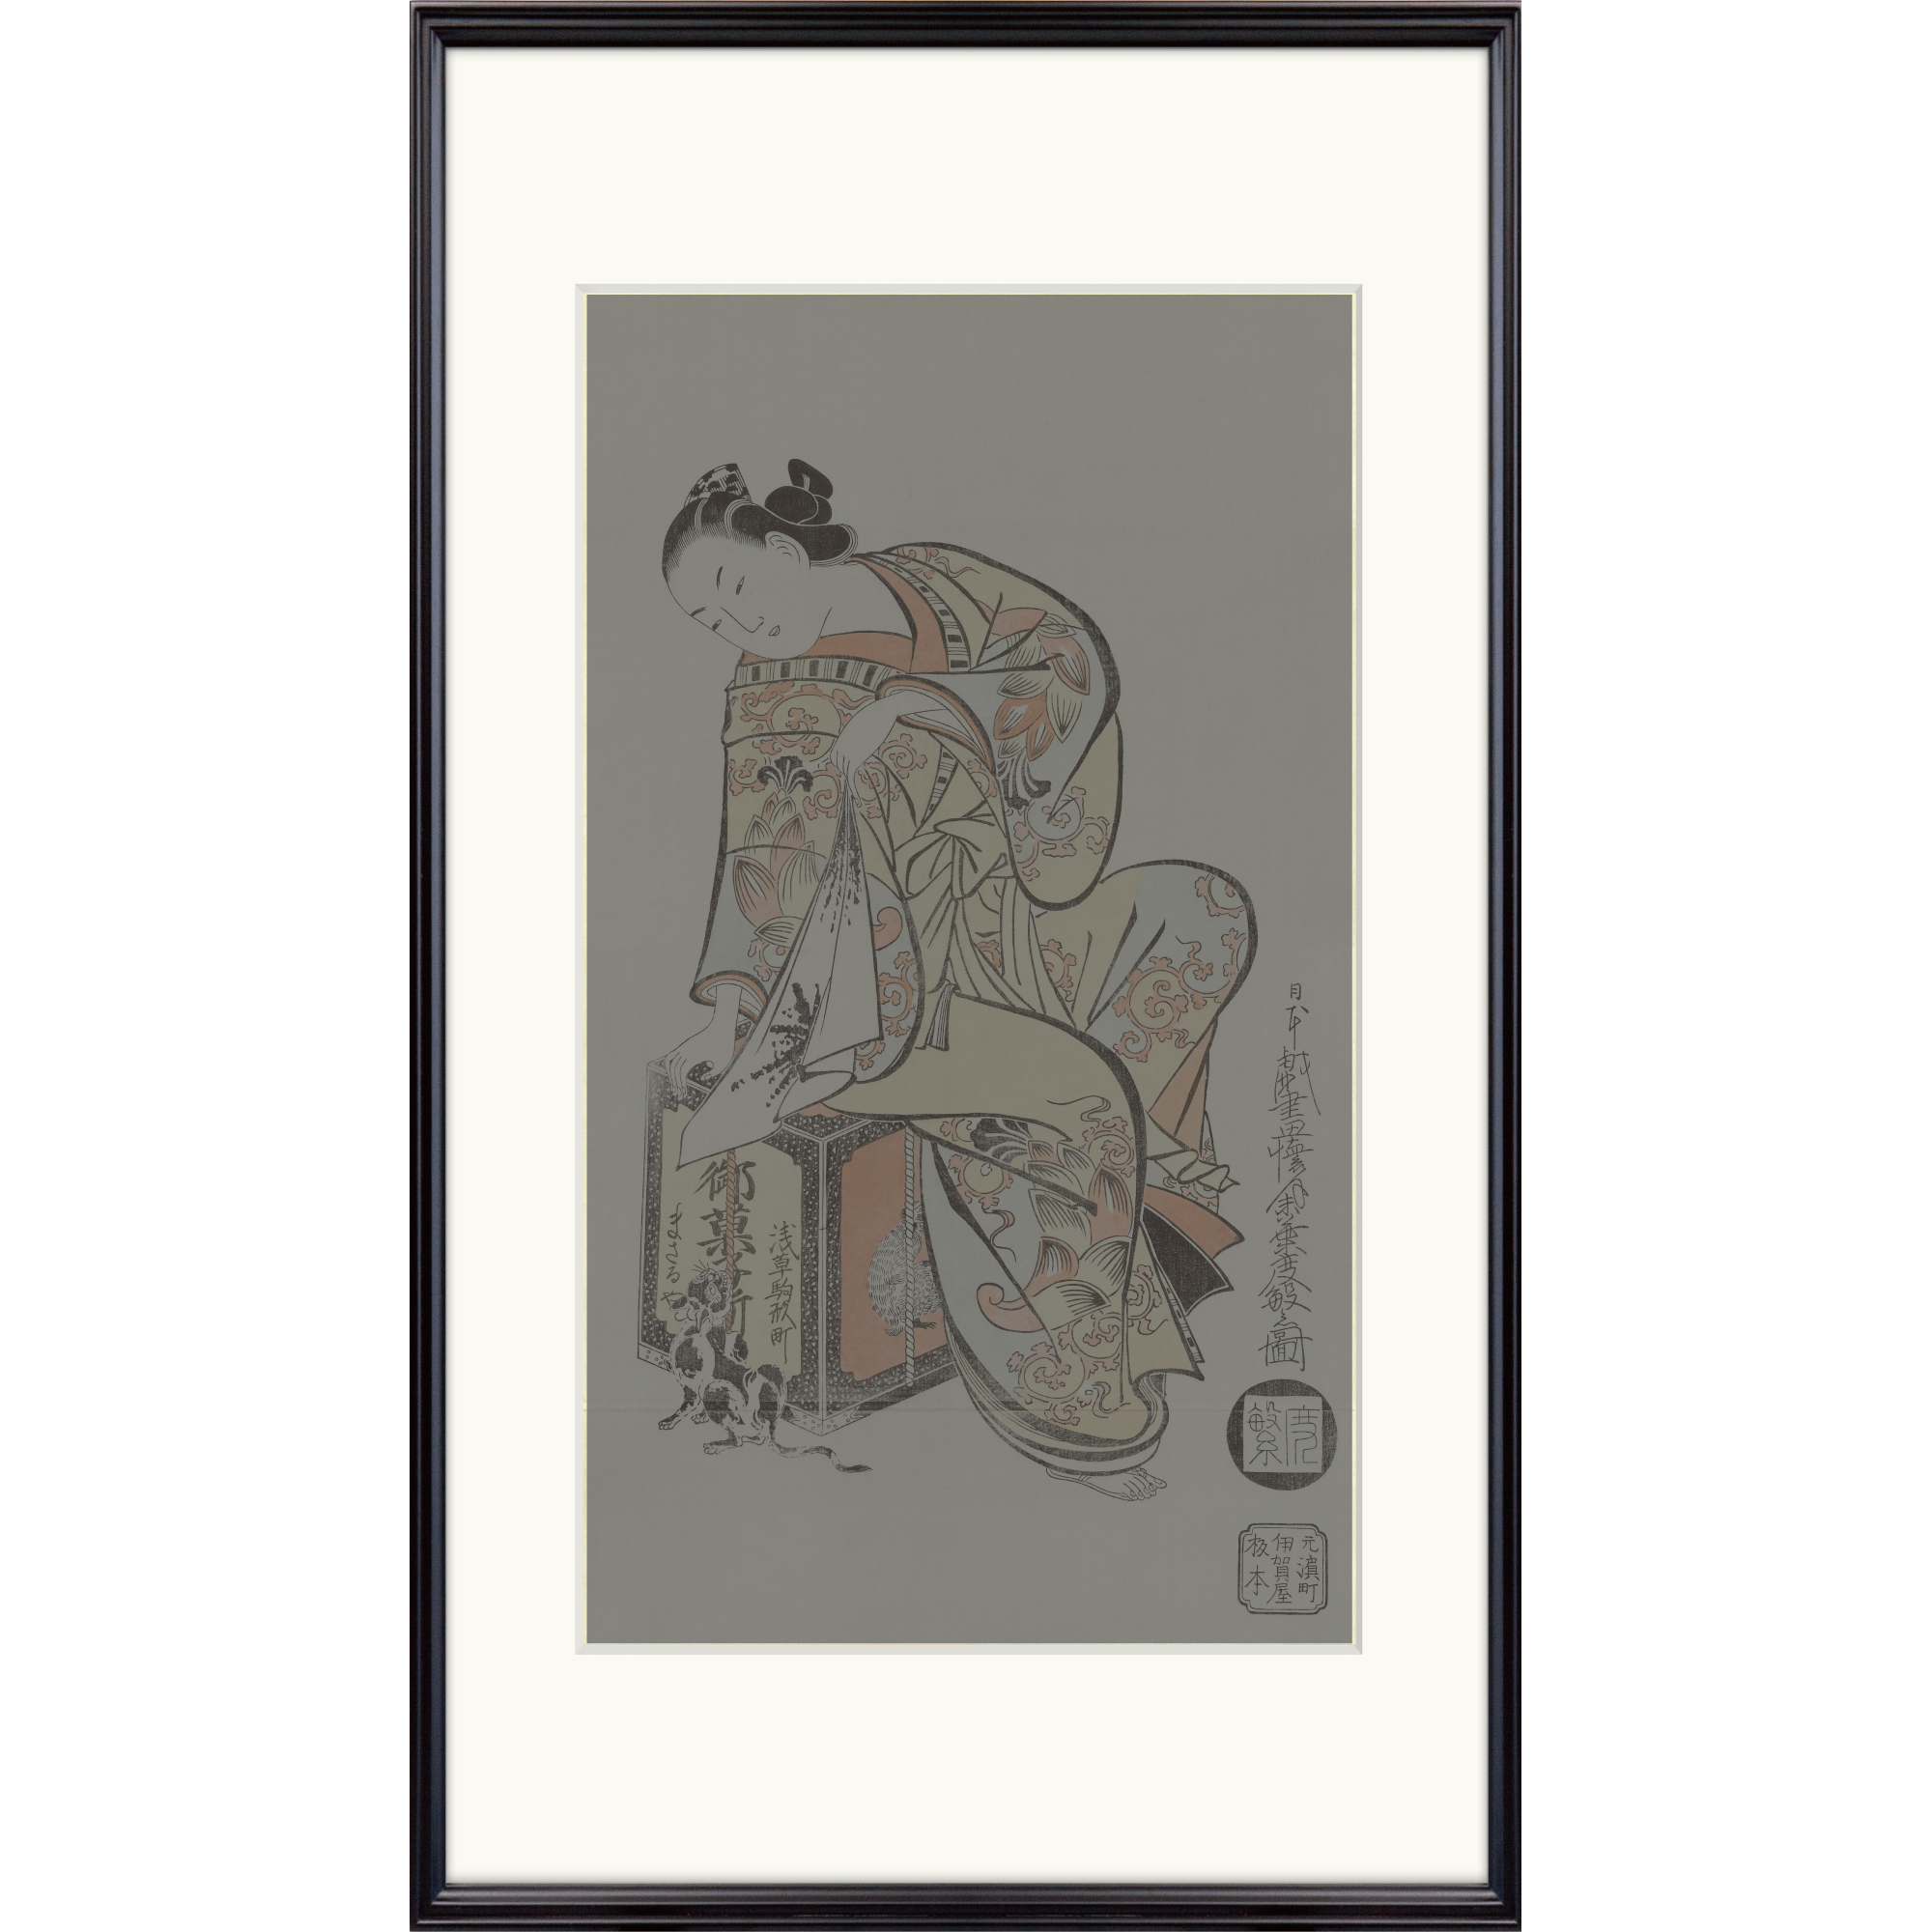 Adachi original frame for Nagaban format